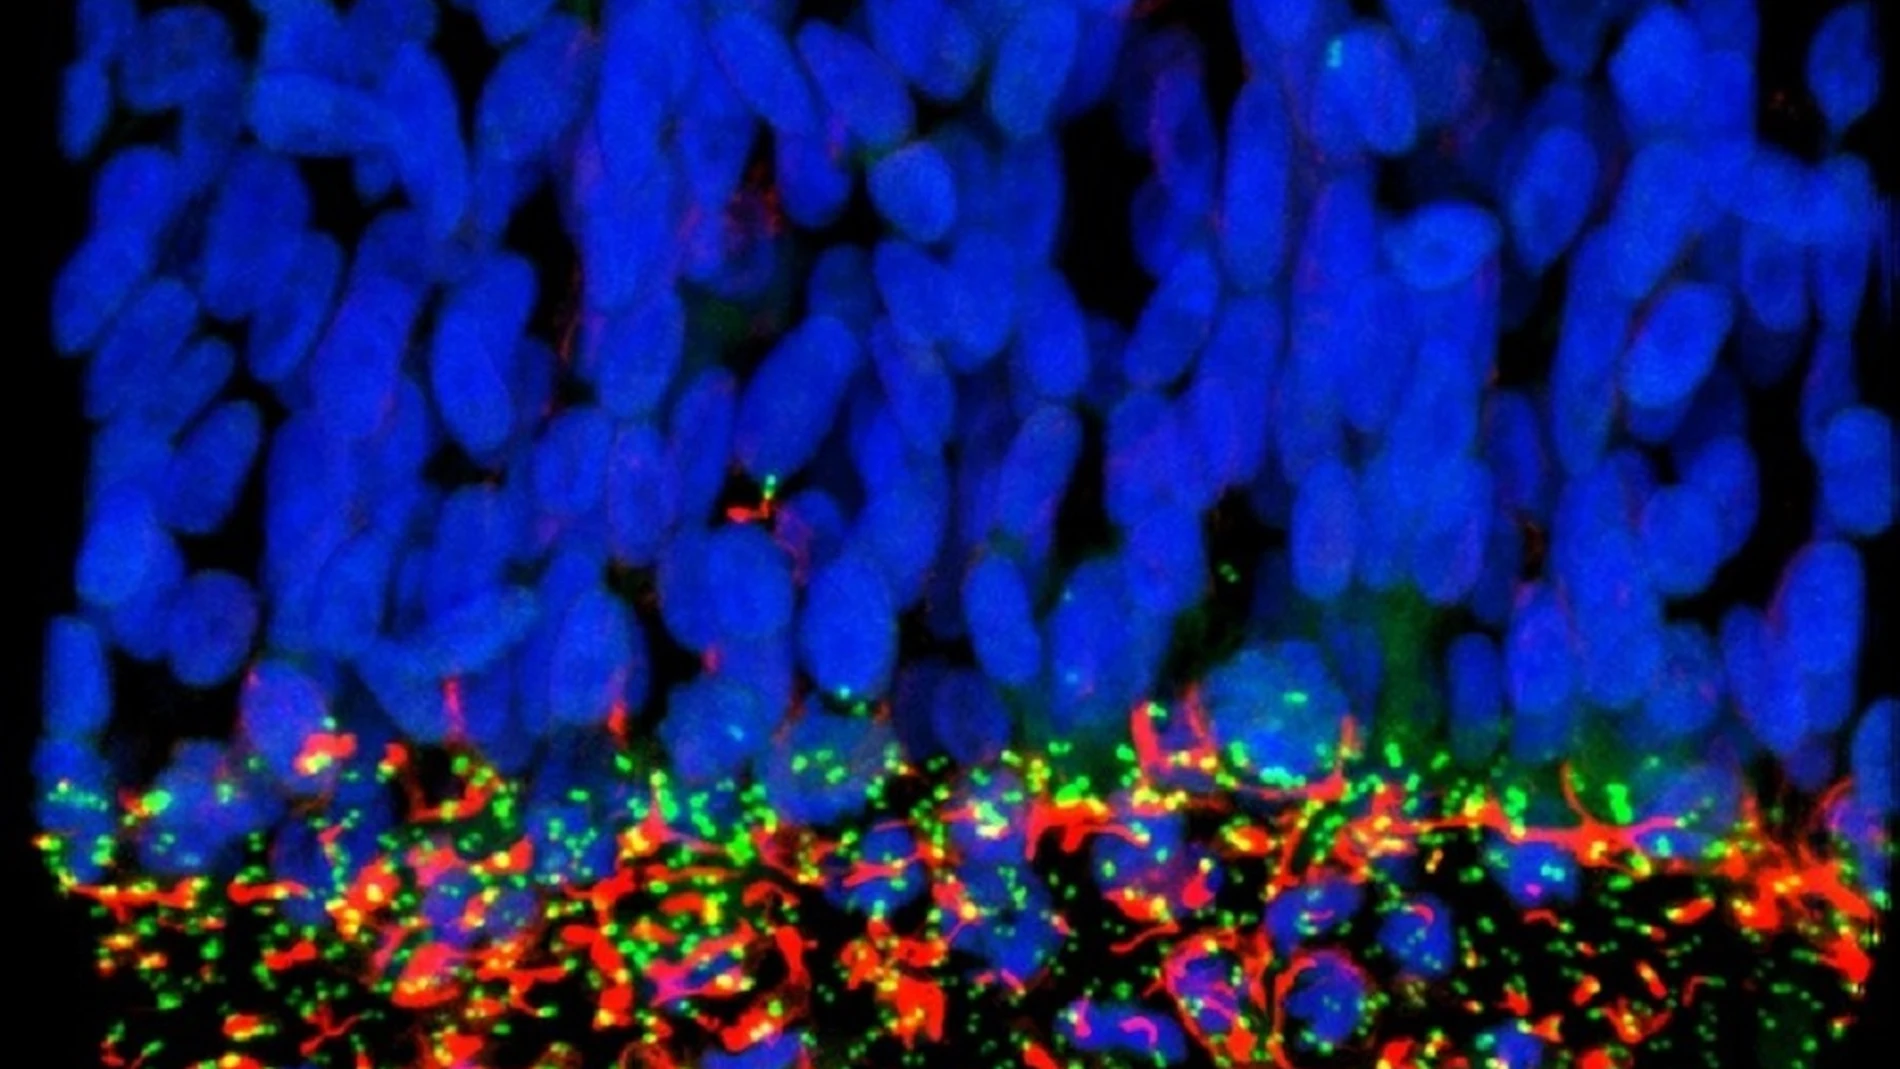 Células madre neurales en un embrión (en azul). Los cilios primarios, marcados en rojo, y las proteínas de la base del cilio (en verde) se ven afectados por la proteína NS5 del virus Zika, lo que desencadena la parada del crecimiento del cerebro del feto